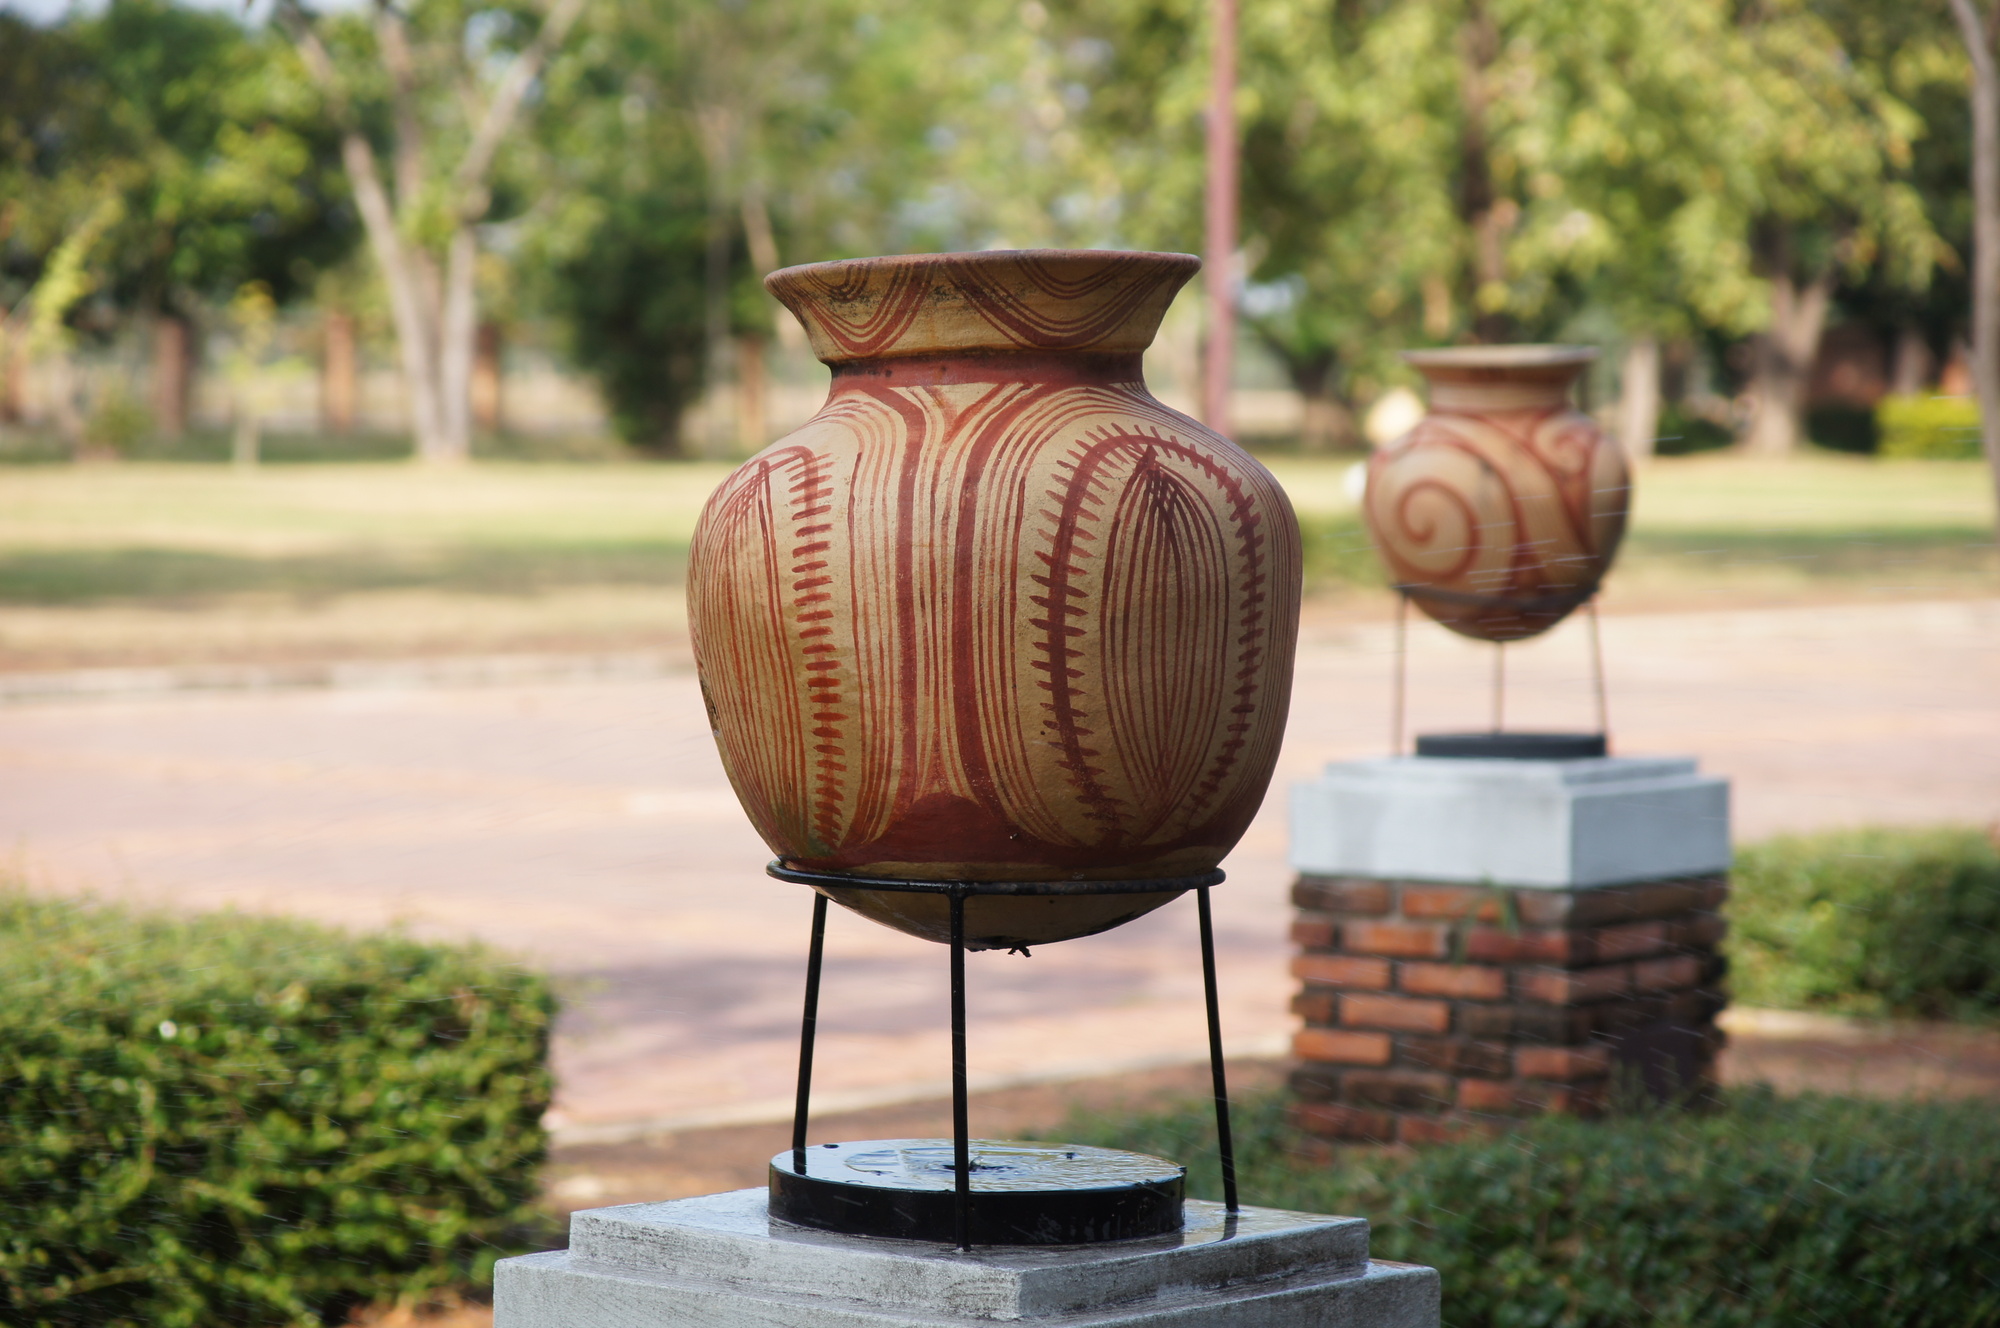 紀元前500年頃の集落跡から渦巻き模様の土器が出土した、タイ東北部の世界遺産「バーンチエン遺跡」